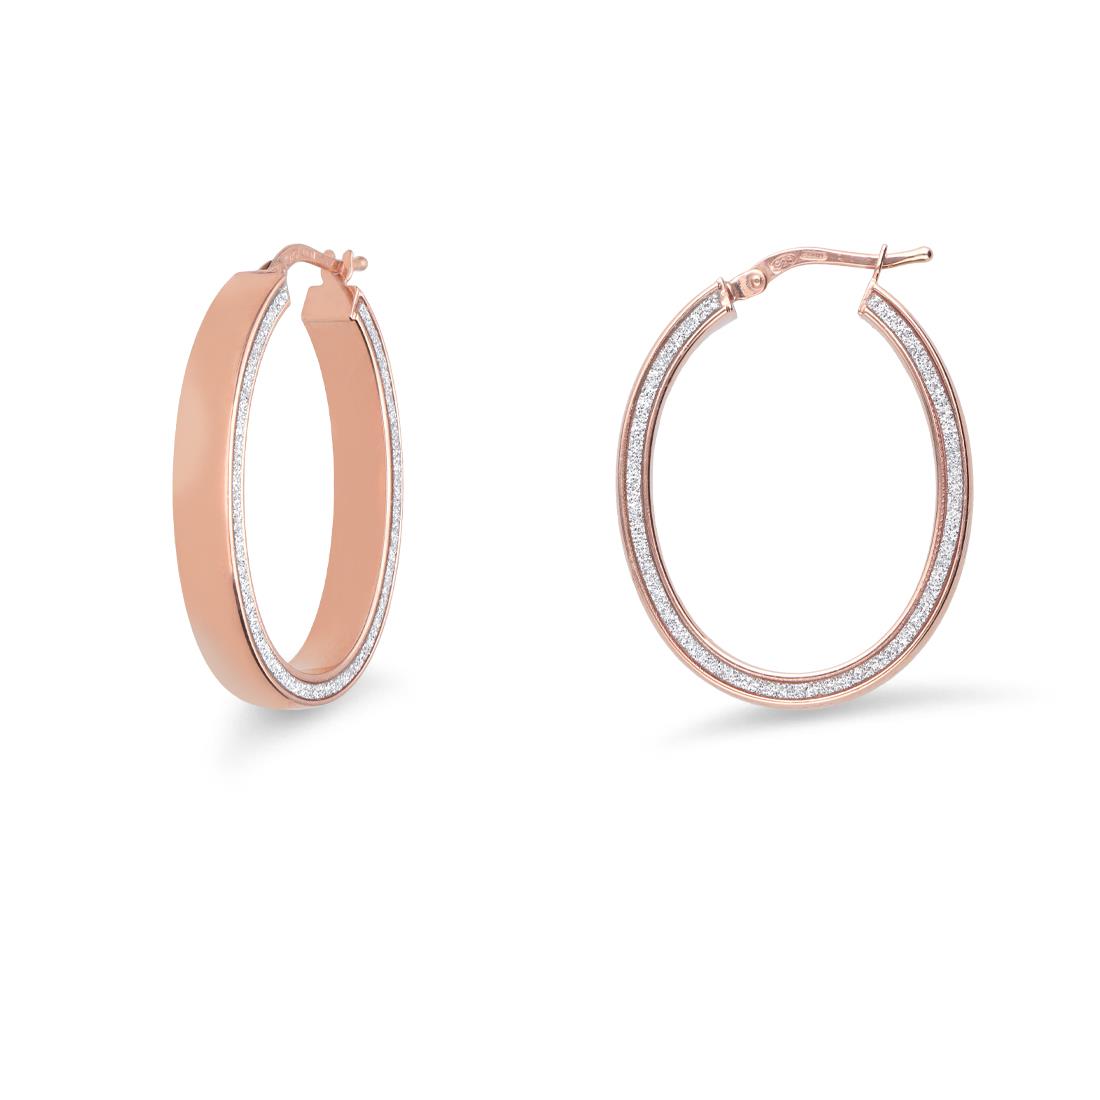 Hoop earrings in pink silver with rhinestones - ORO&CO 925